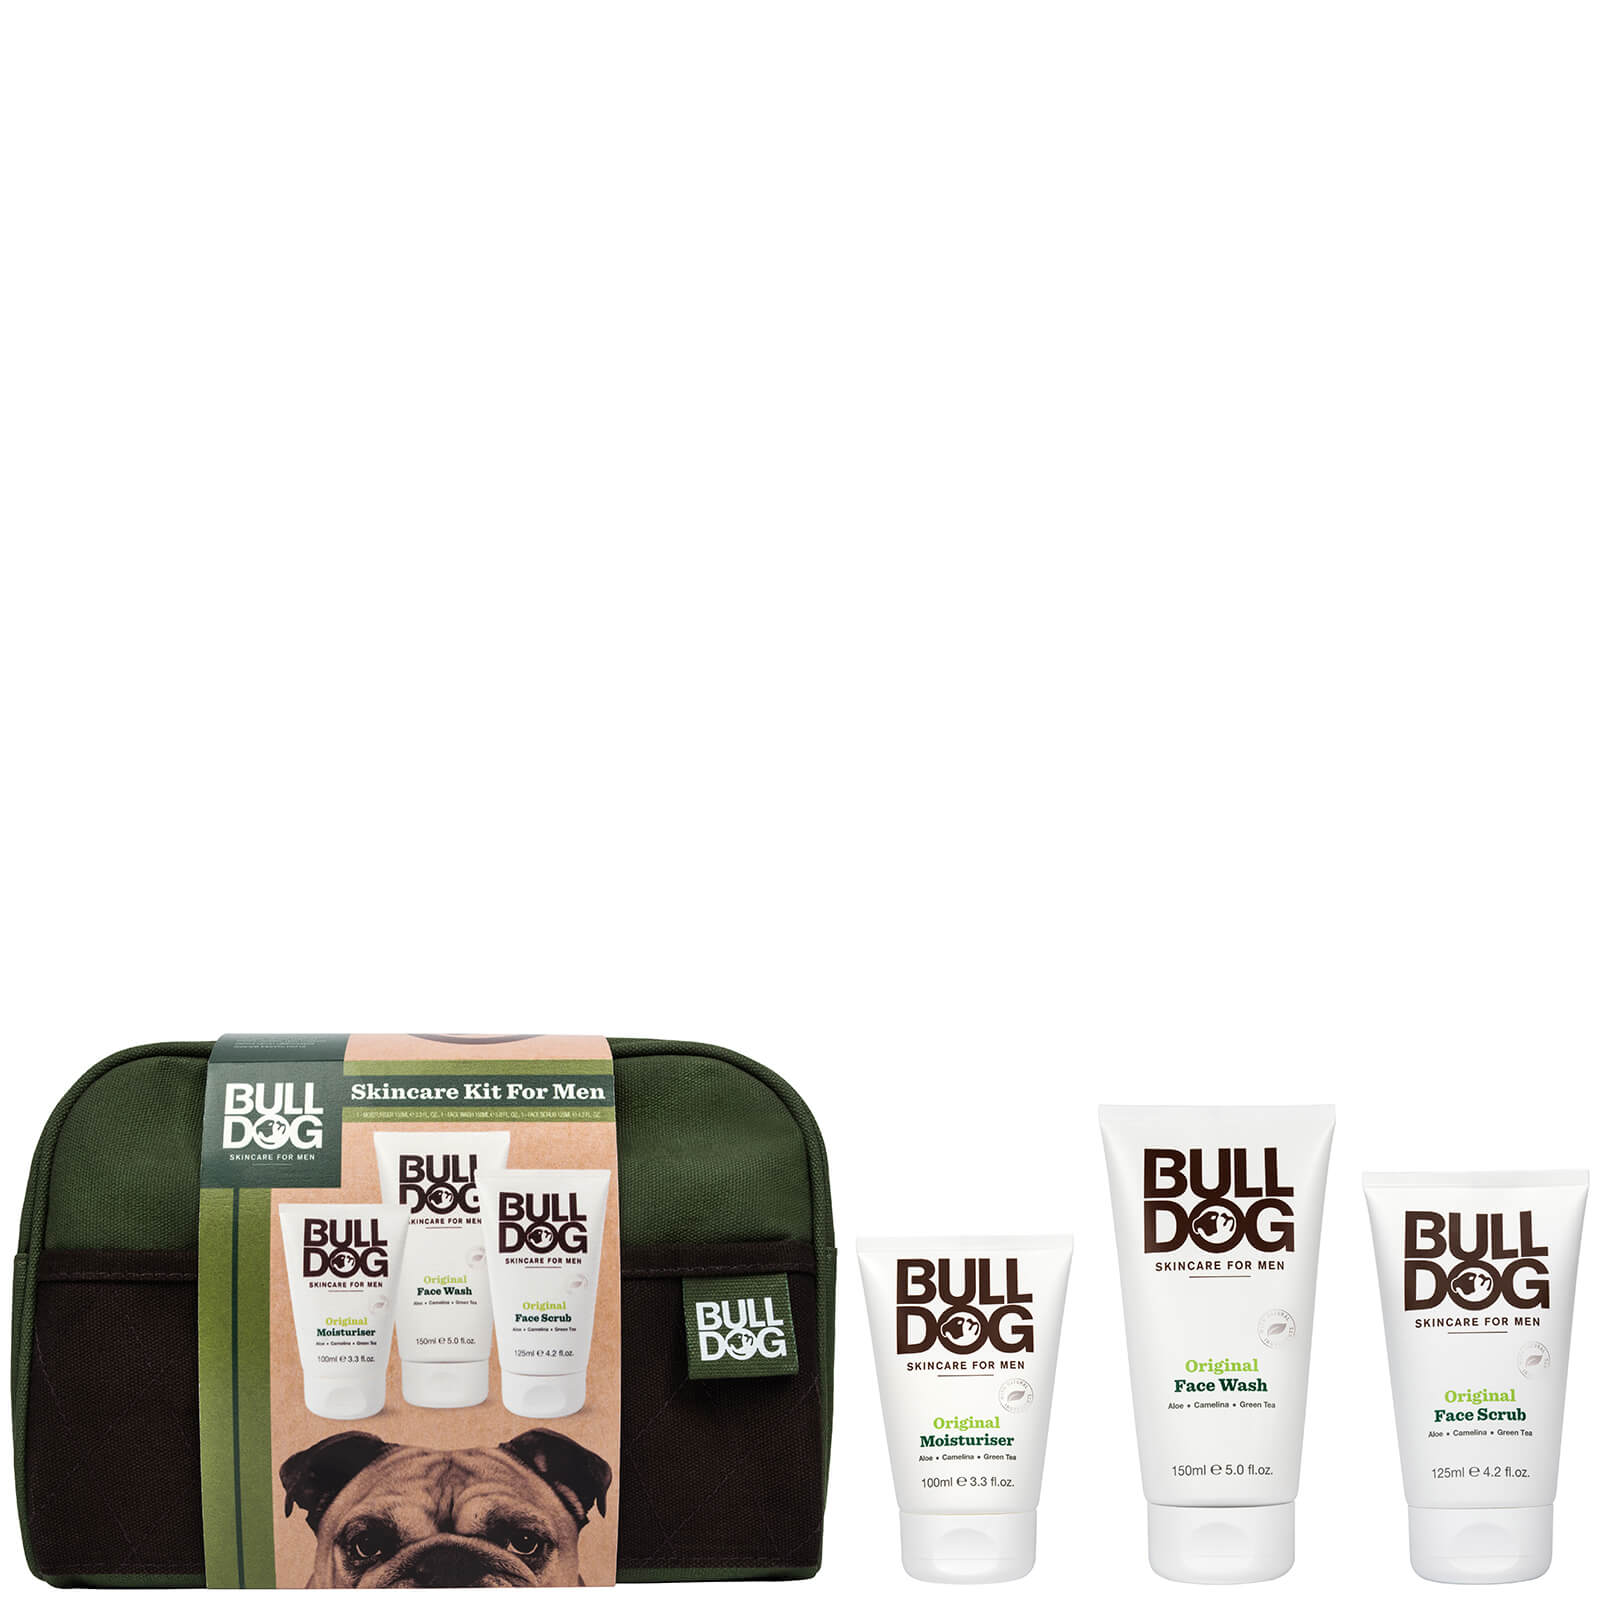 Bulldog Skincare Kit for Men